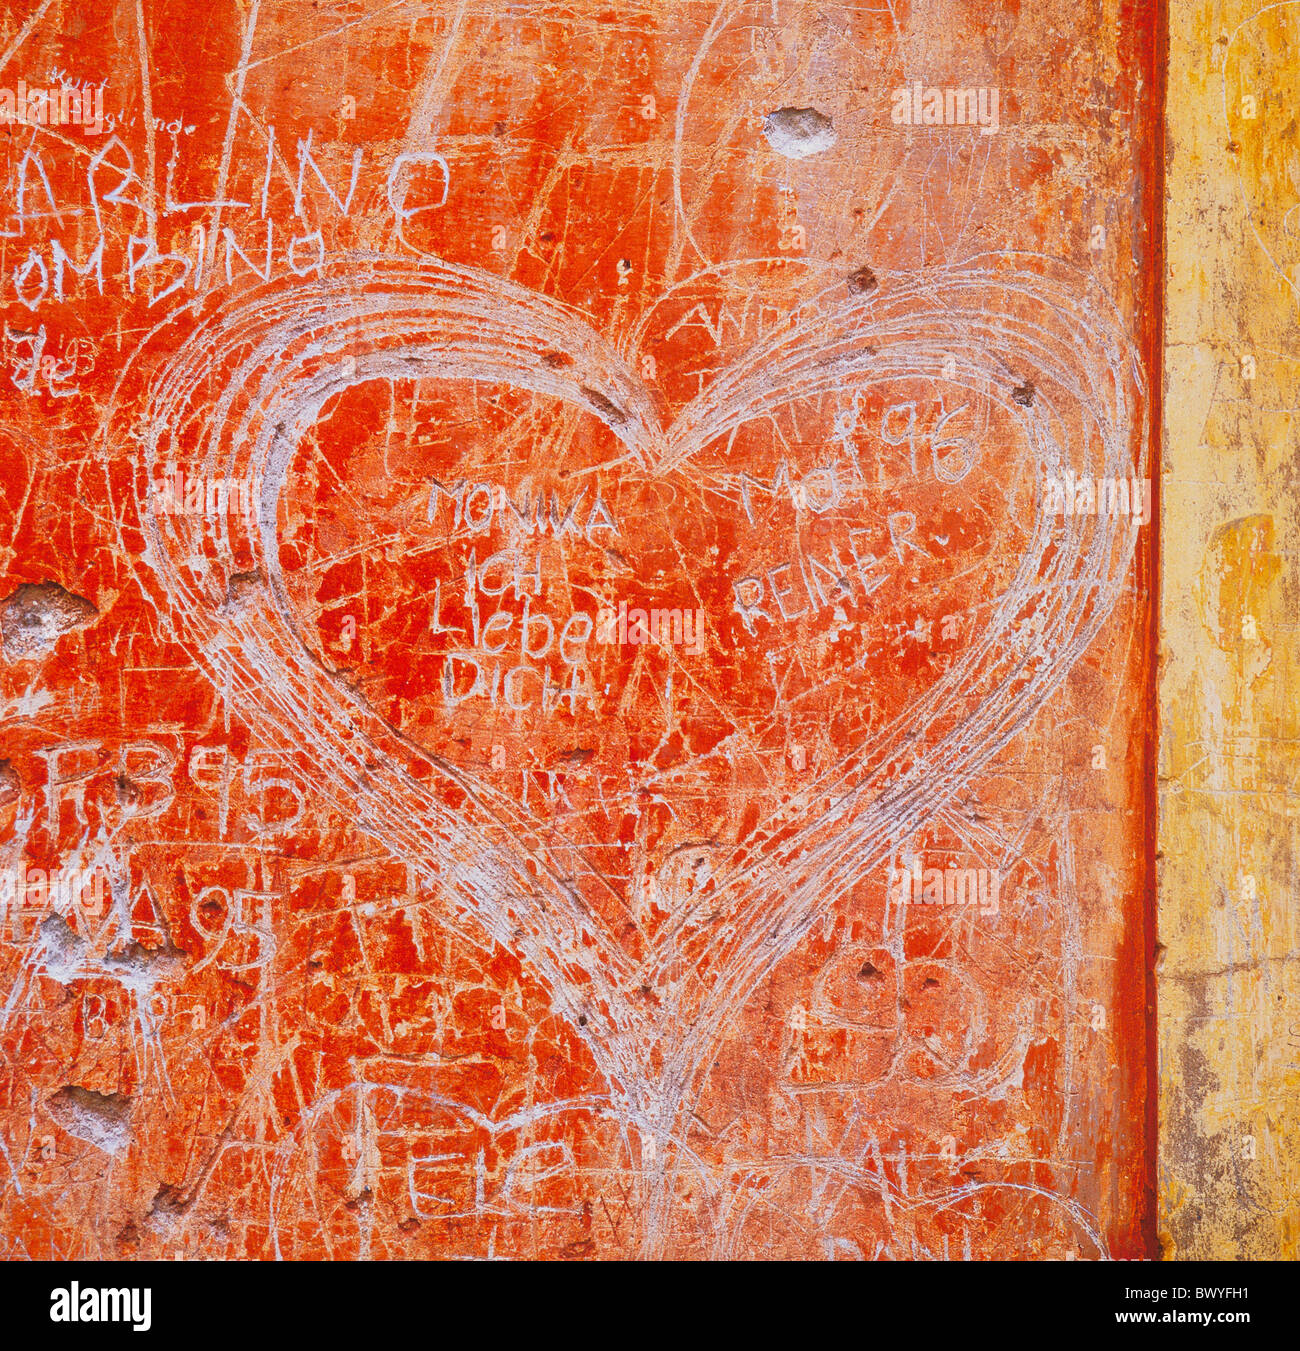 Compétences de l'art Graffiti griffonnages heart love symbol Banque D'Images